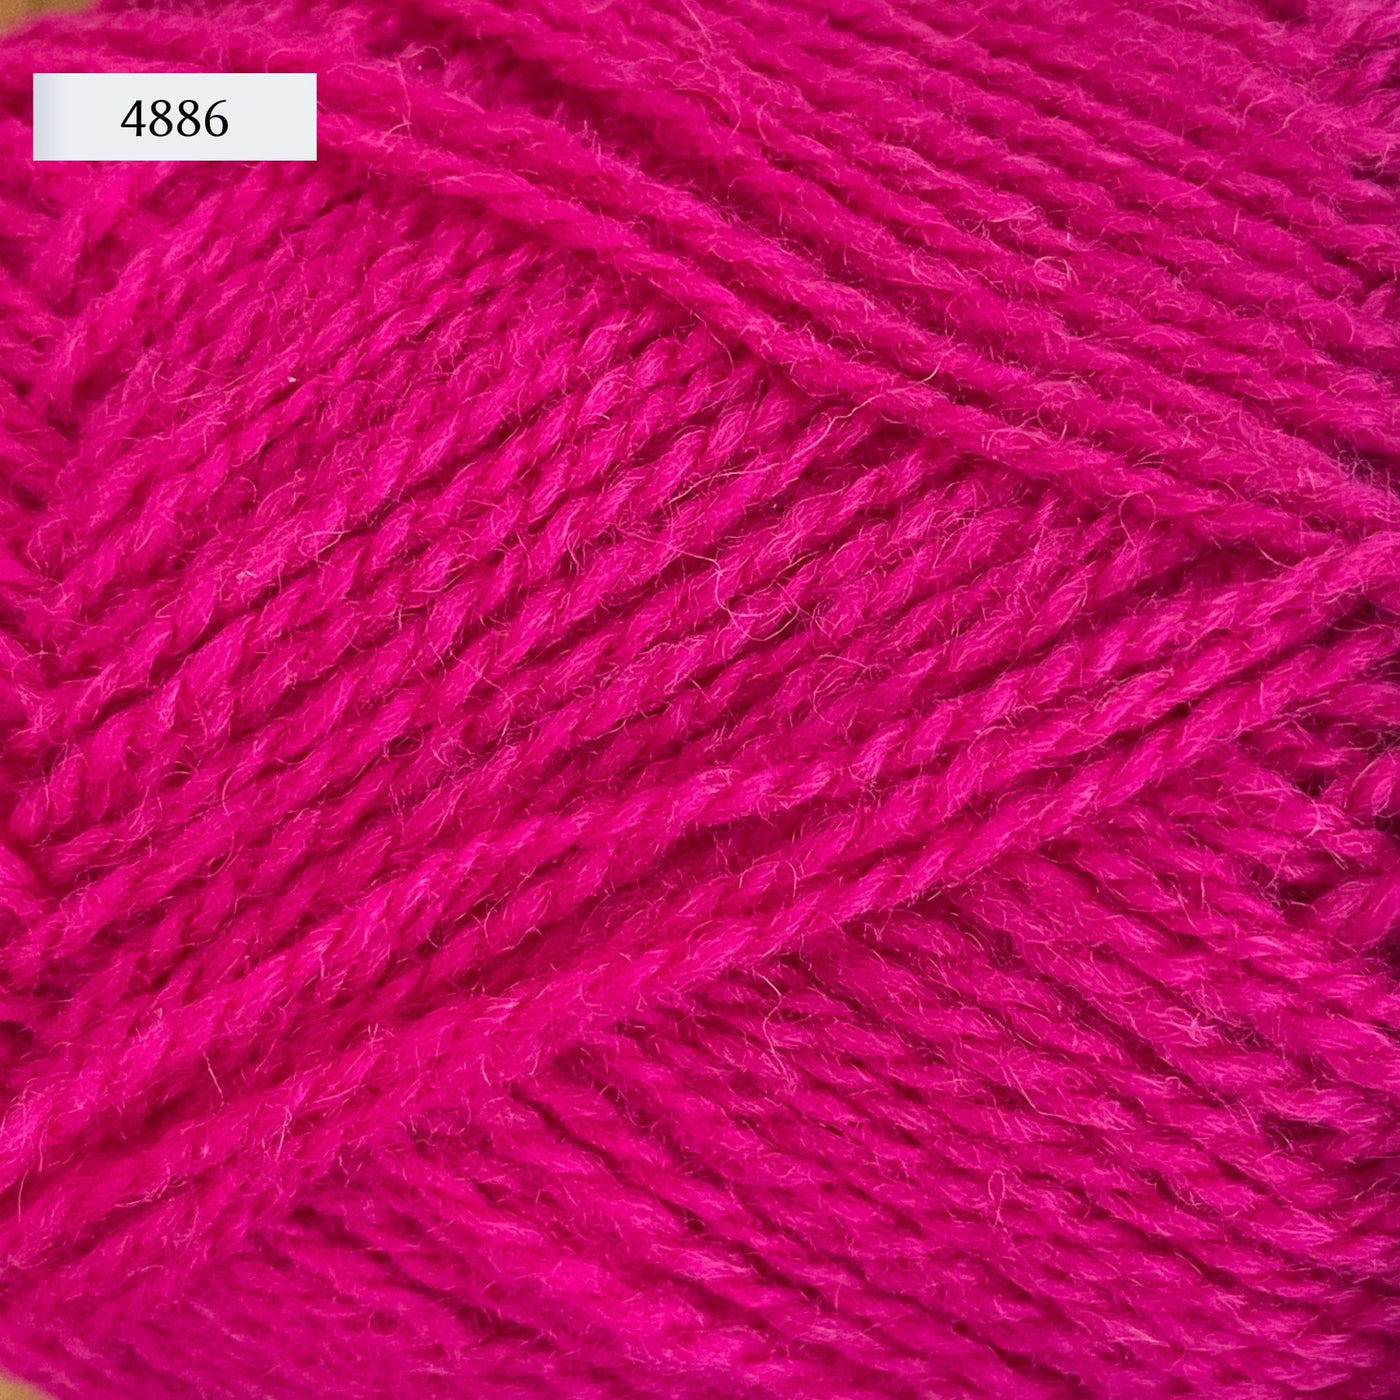 Rauma Finullgarn, a fingering/sport weight yarn, in color 4886, a bright fuschia